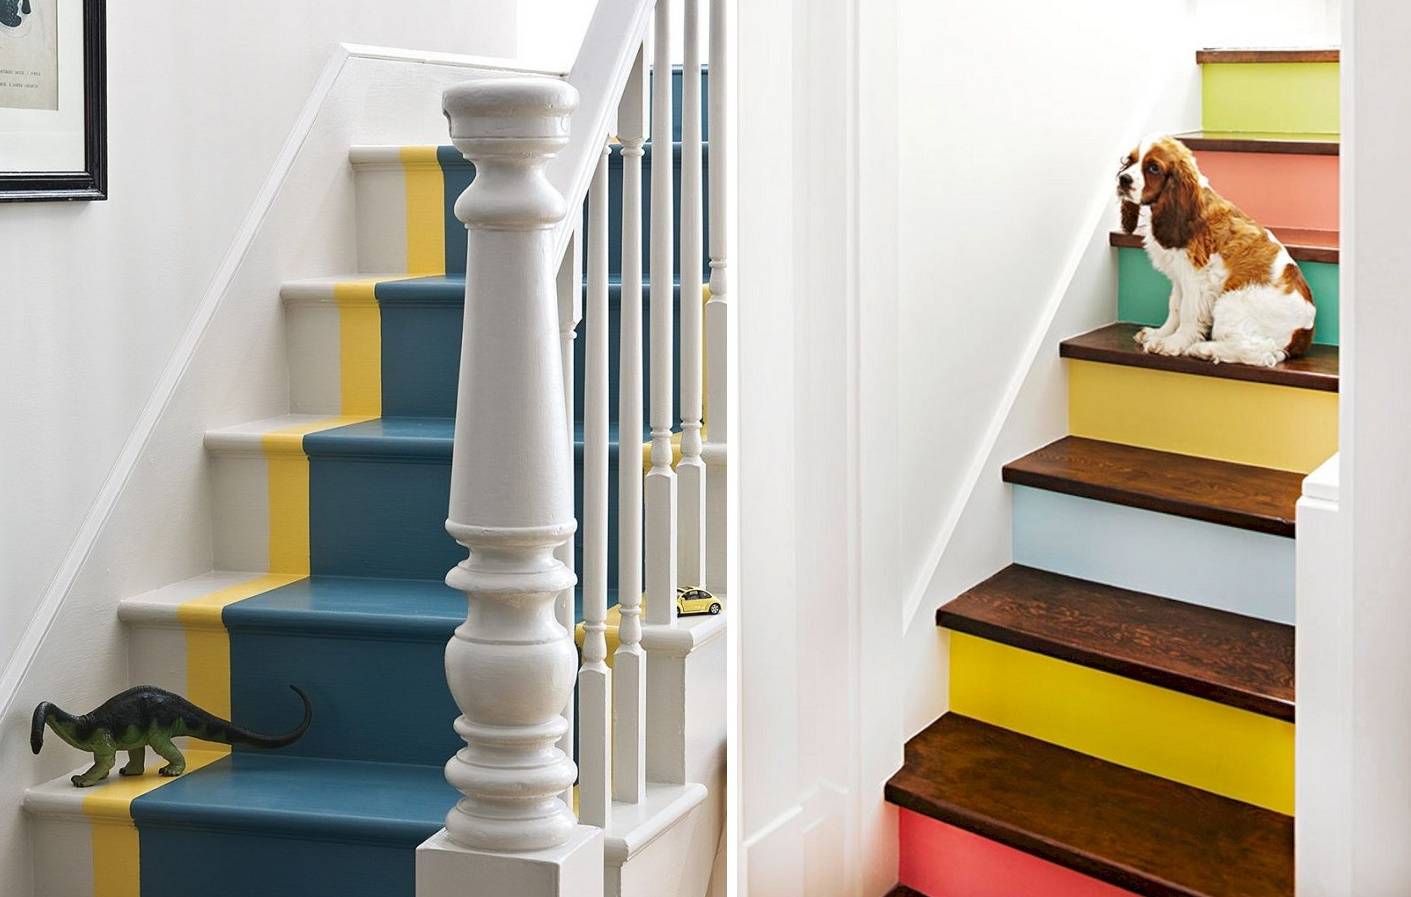 Чем лучше покрасить деревянную лестницу в доме: как из сосны, внутри, каким цветом на второй этаж, как правильно своими руками в домашних условиях